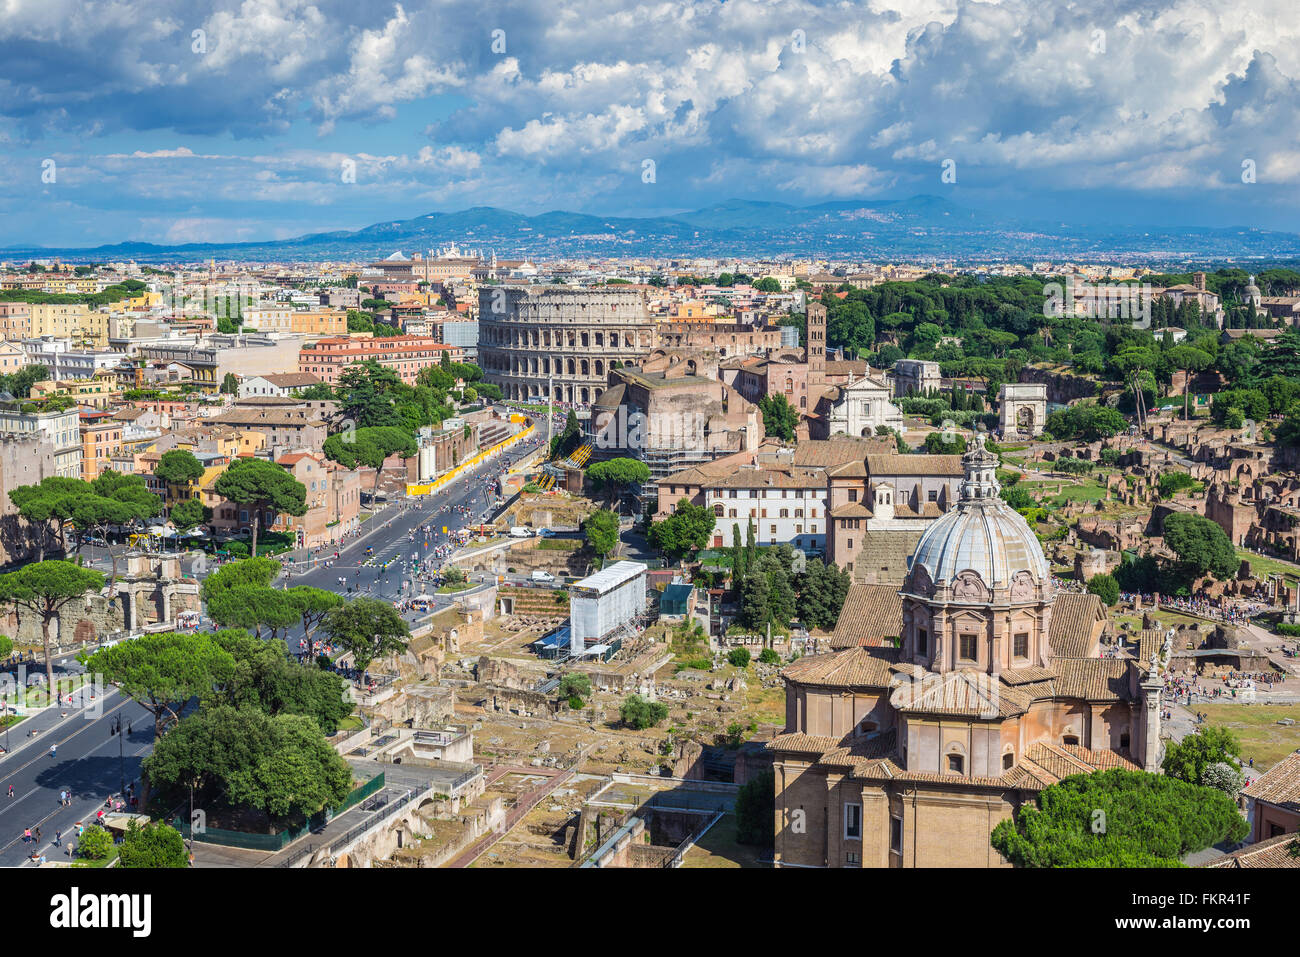 La ville de Rome et le Colisée, Rome, Italie Banque D'Images